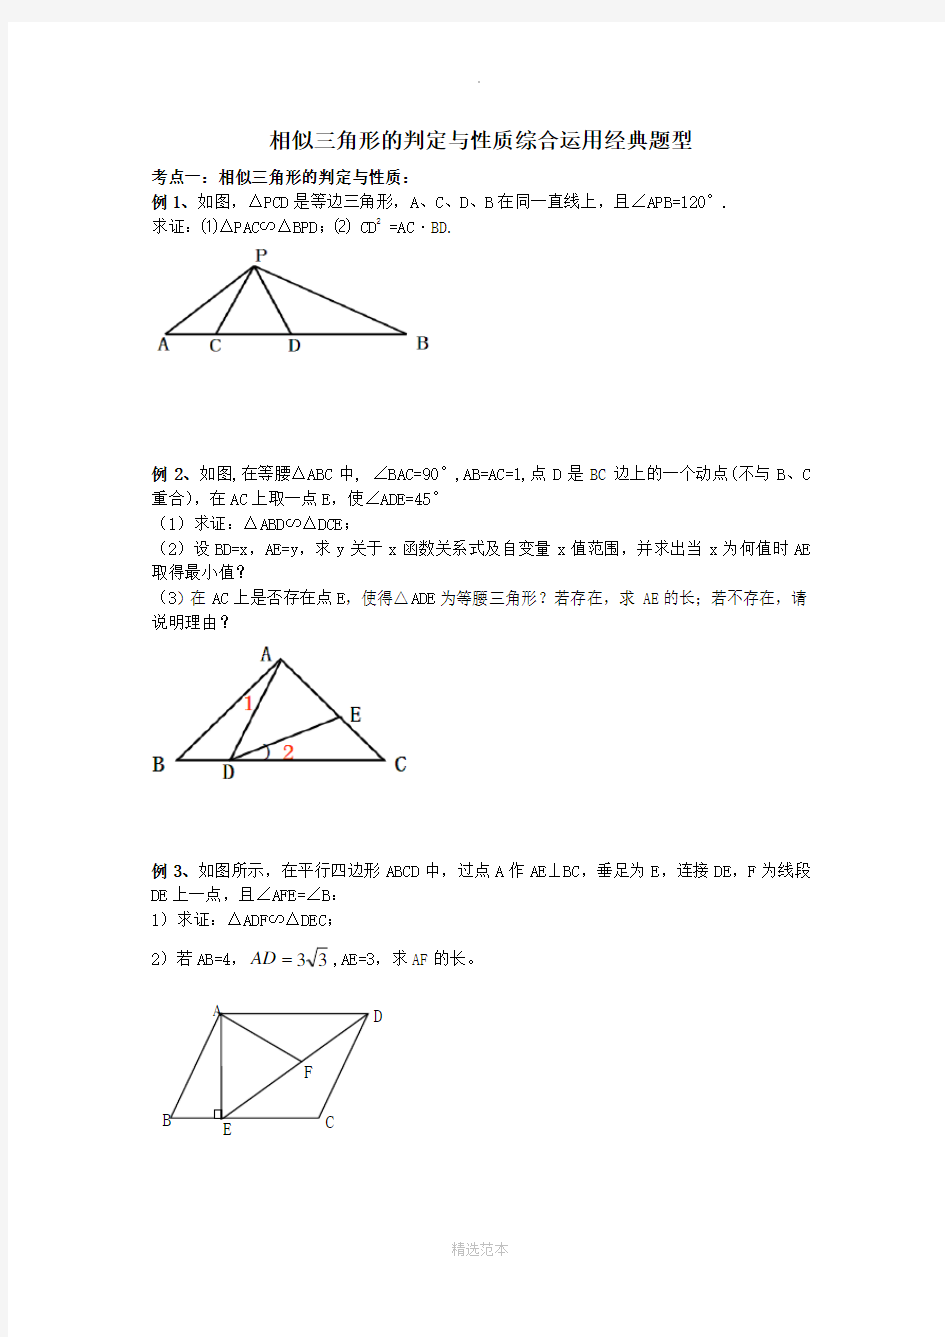 相似三角形典型例题精选